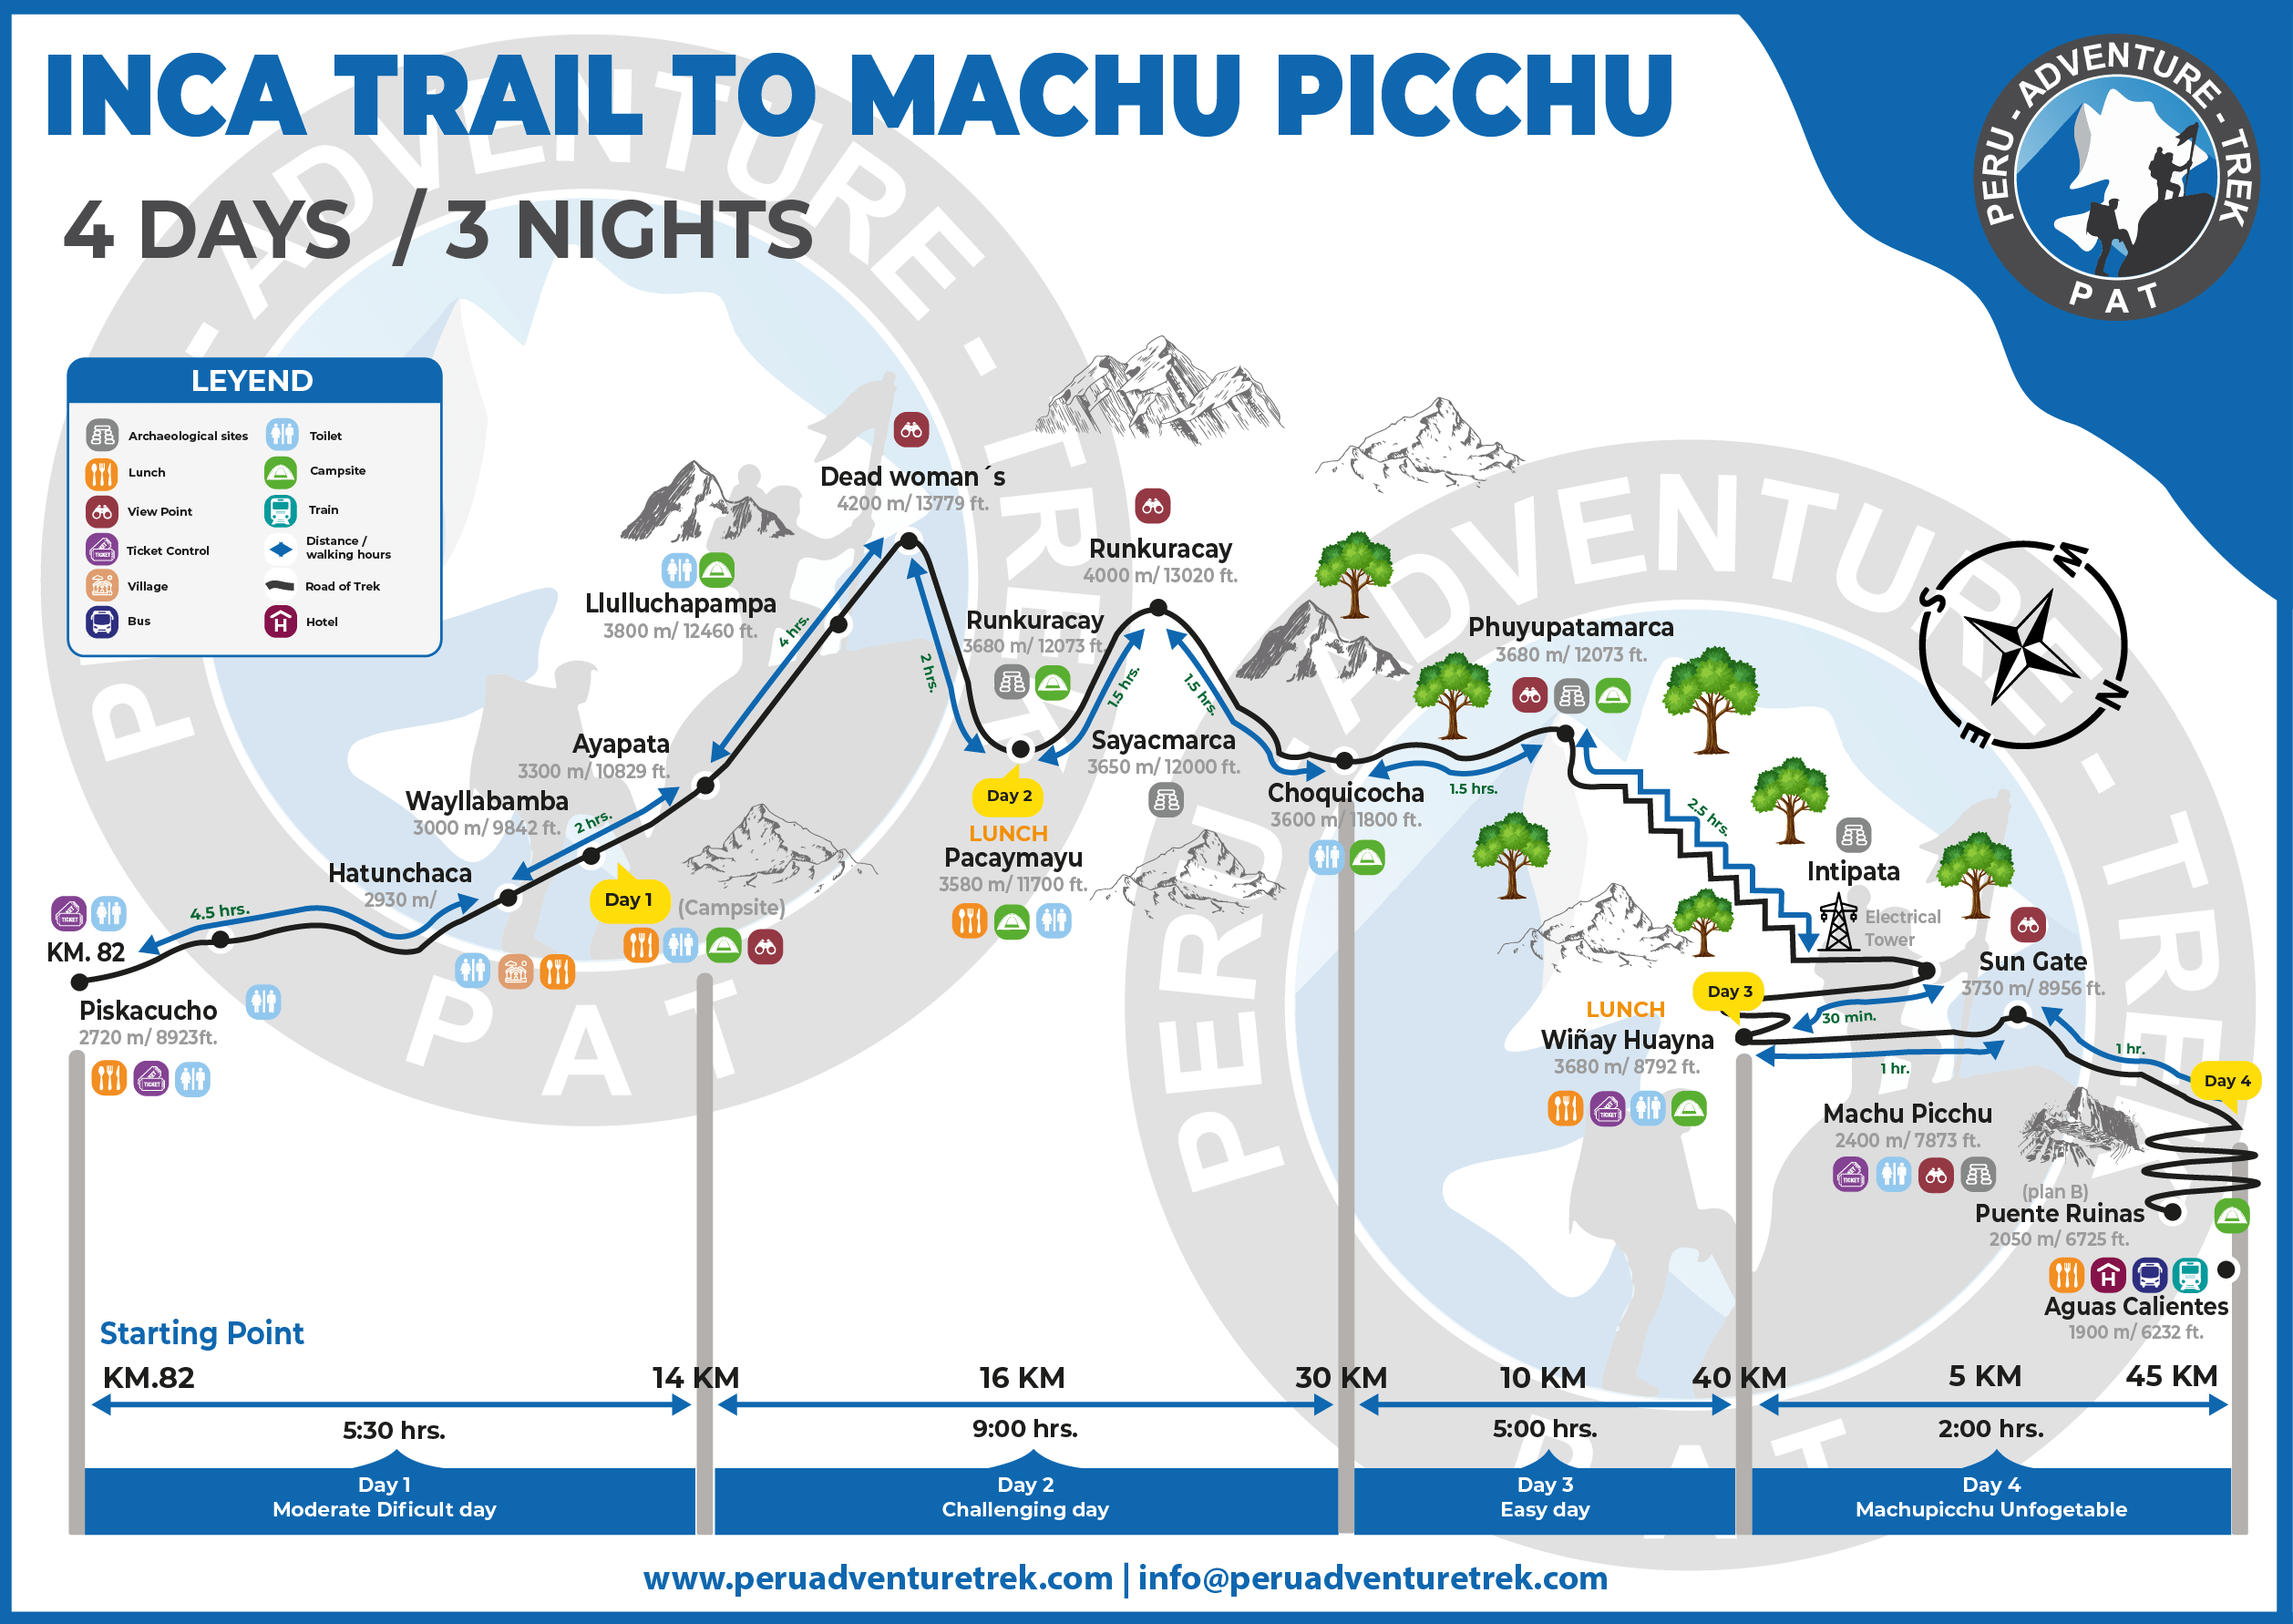 Trilha Inca Clássica Machu Picchu 4 Dias - Mapa